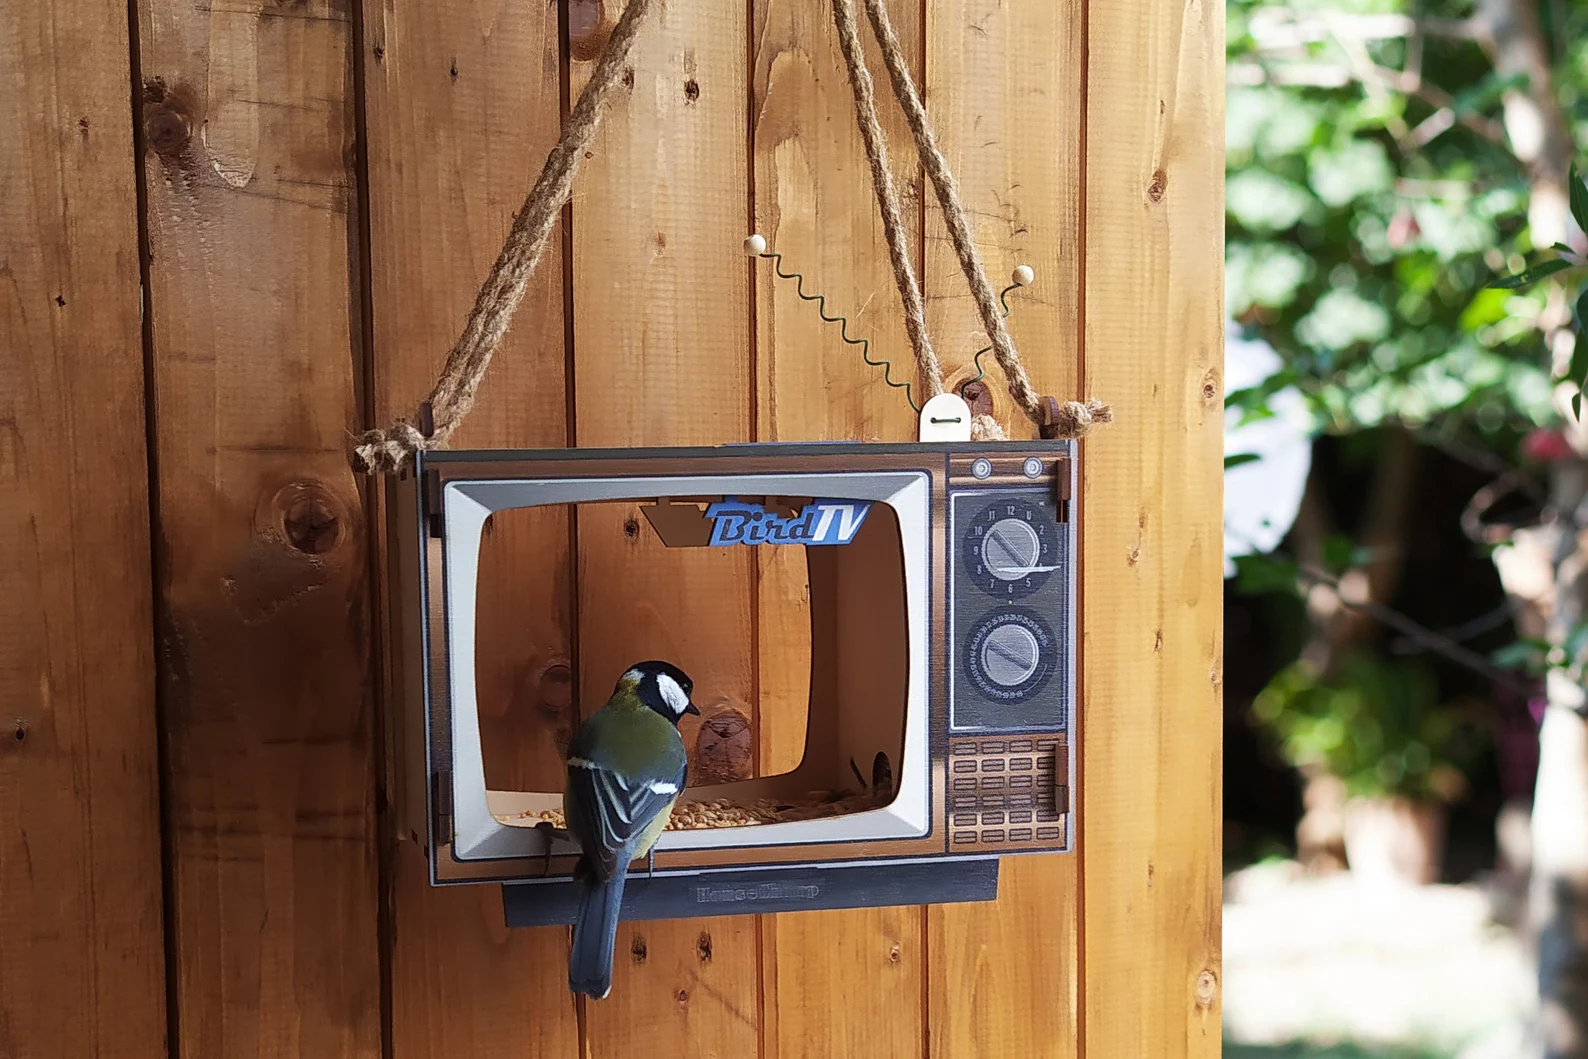 Unique TV Shaped Bird Feeder for Garden Decoration